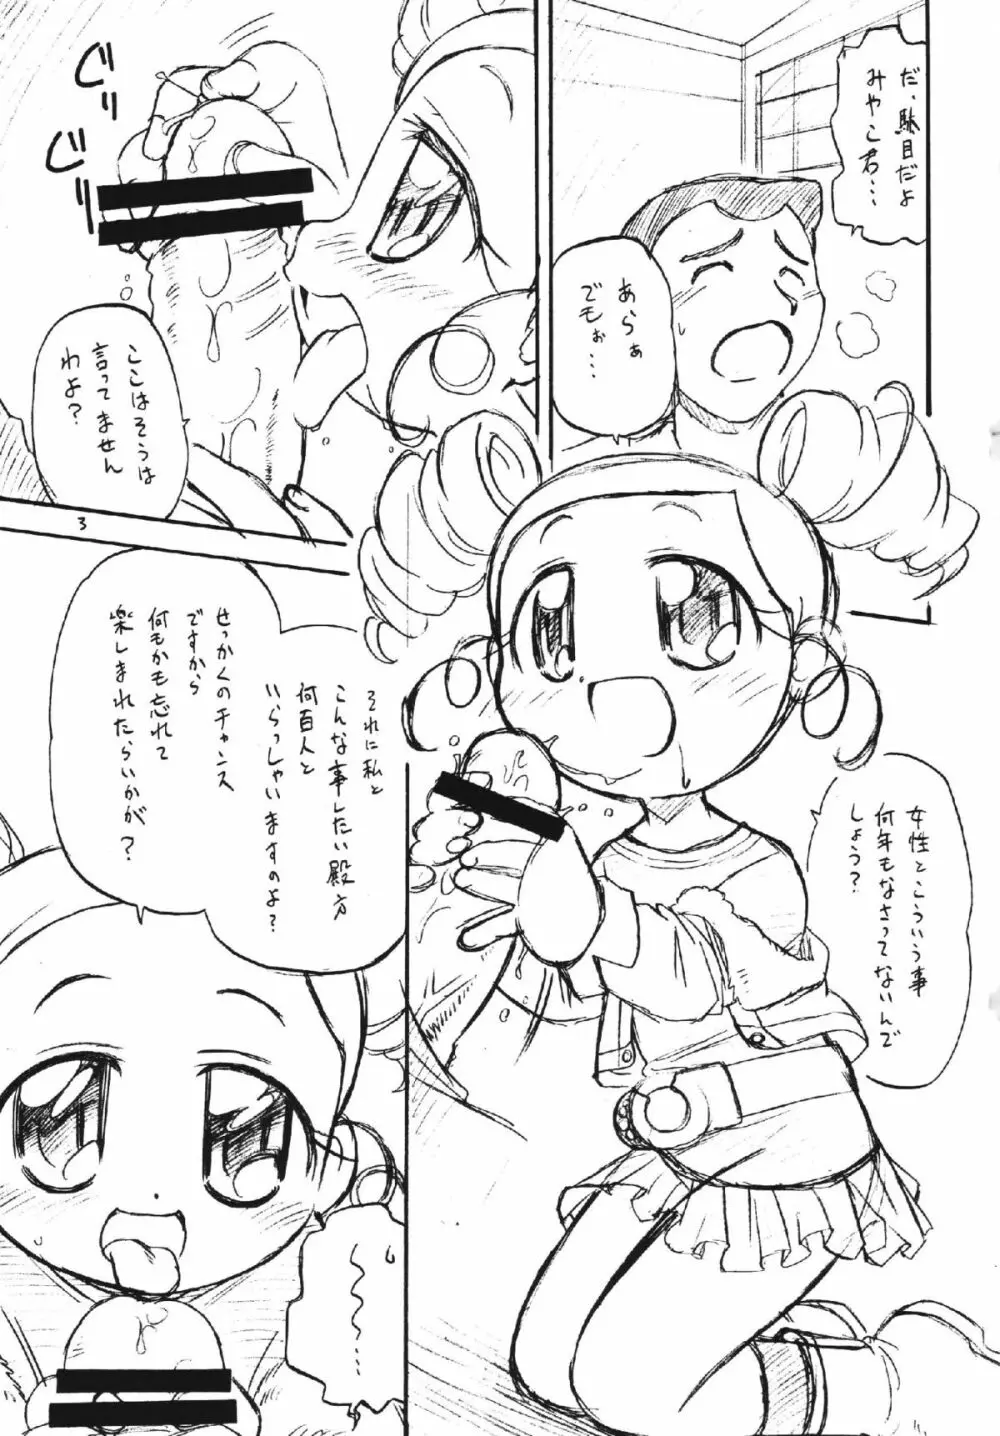 ラディカルケミカルかしまし娘Zっ! - page3